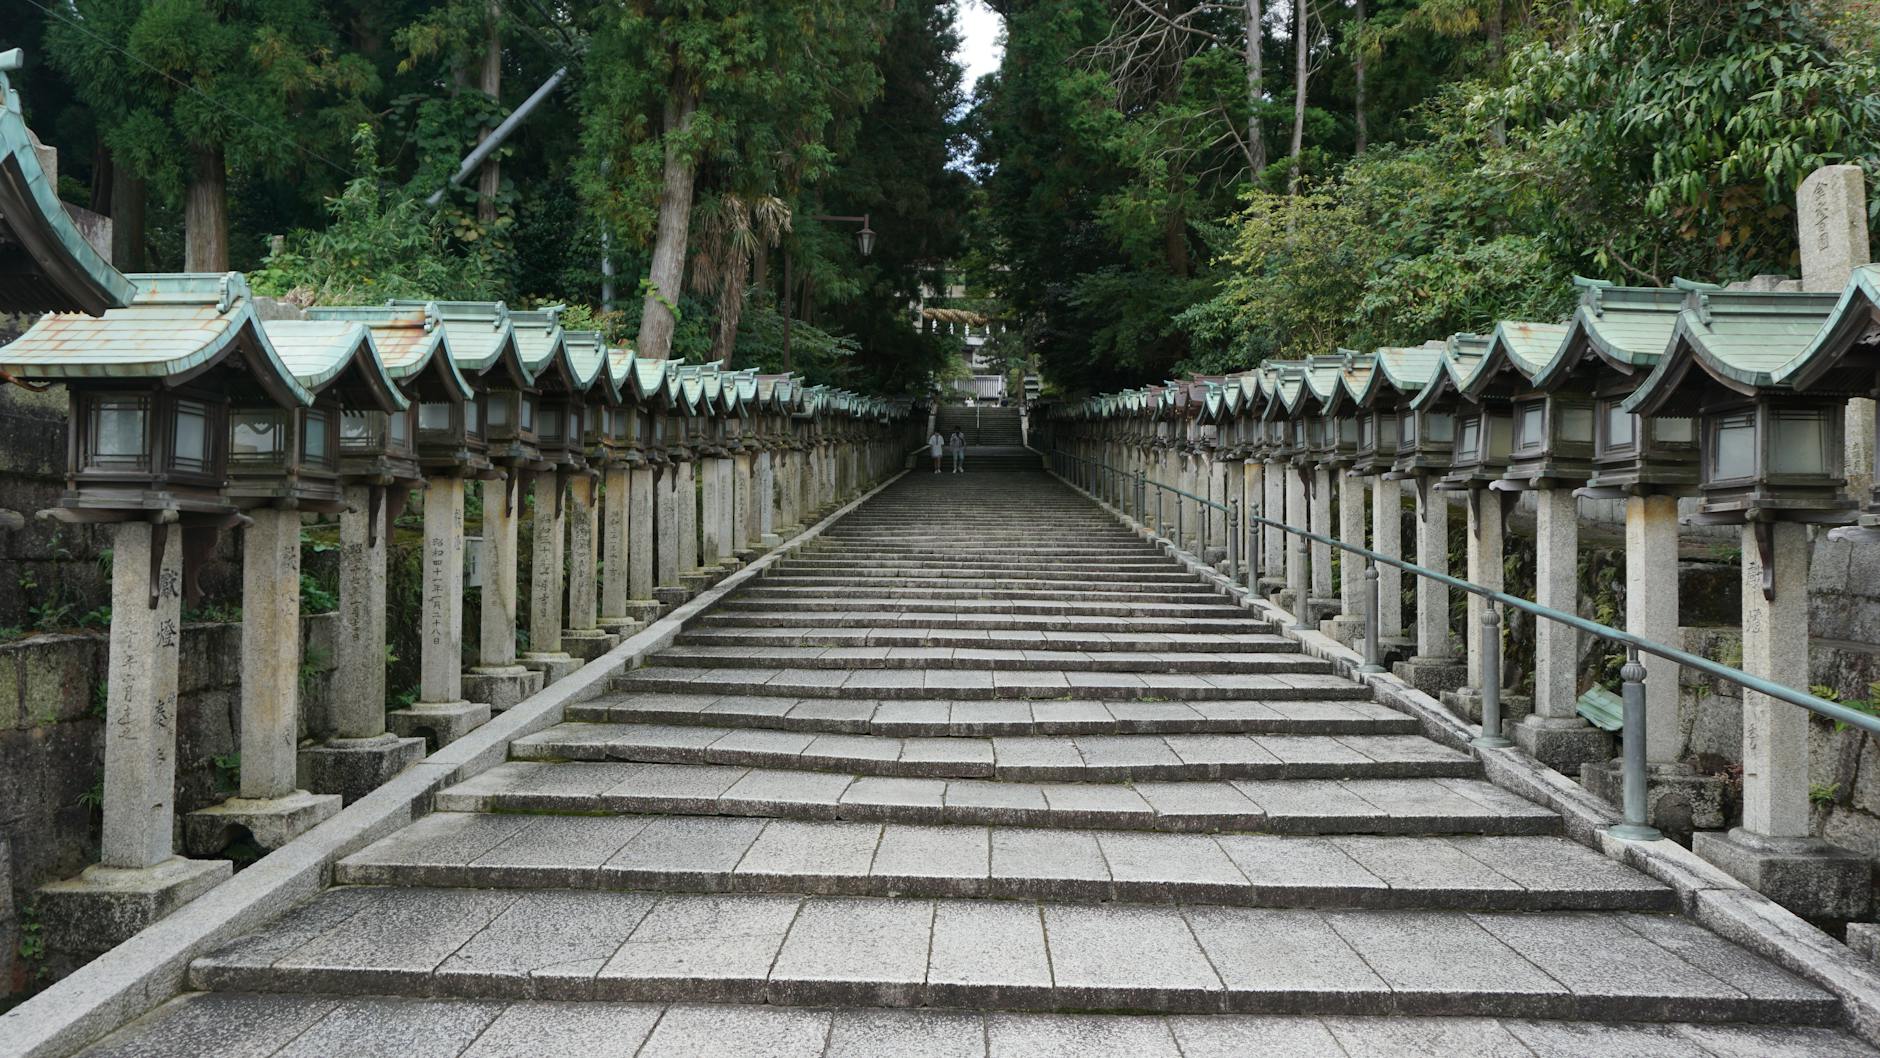 Little Shrines along Steps